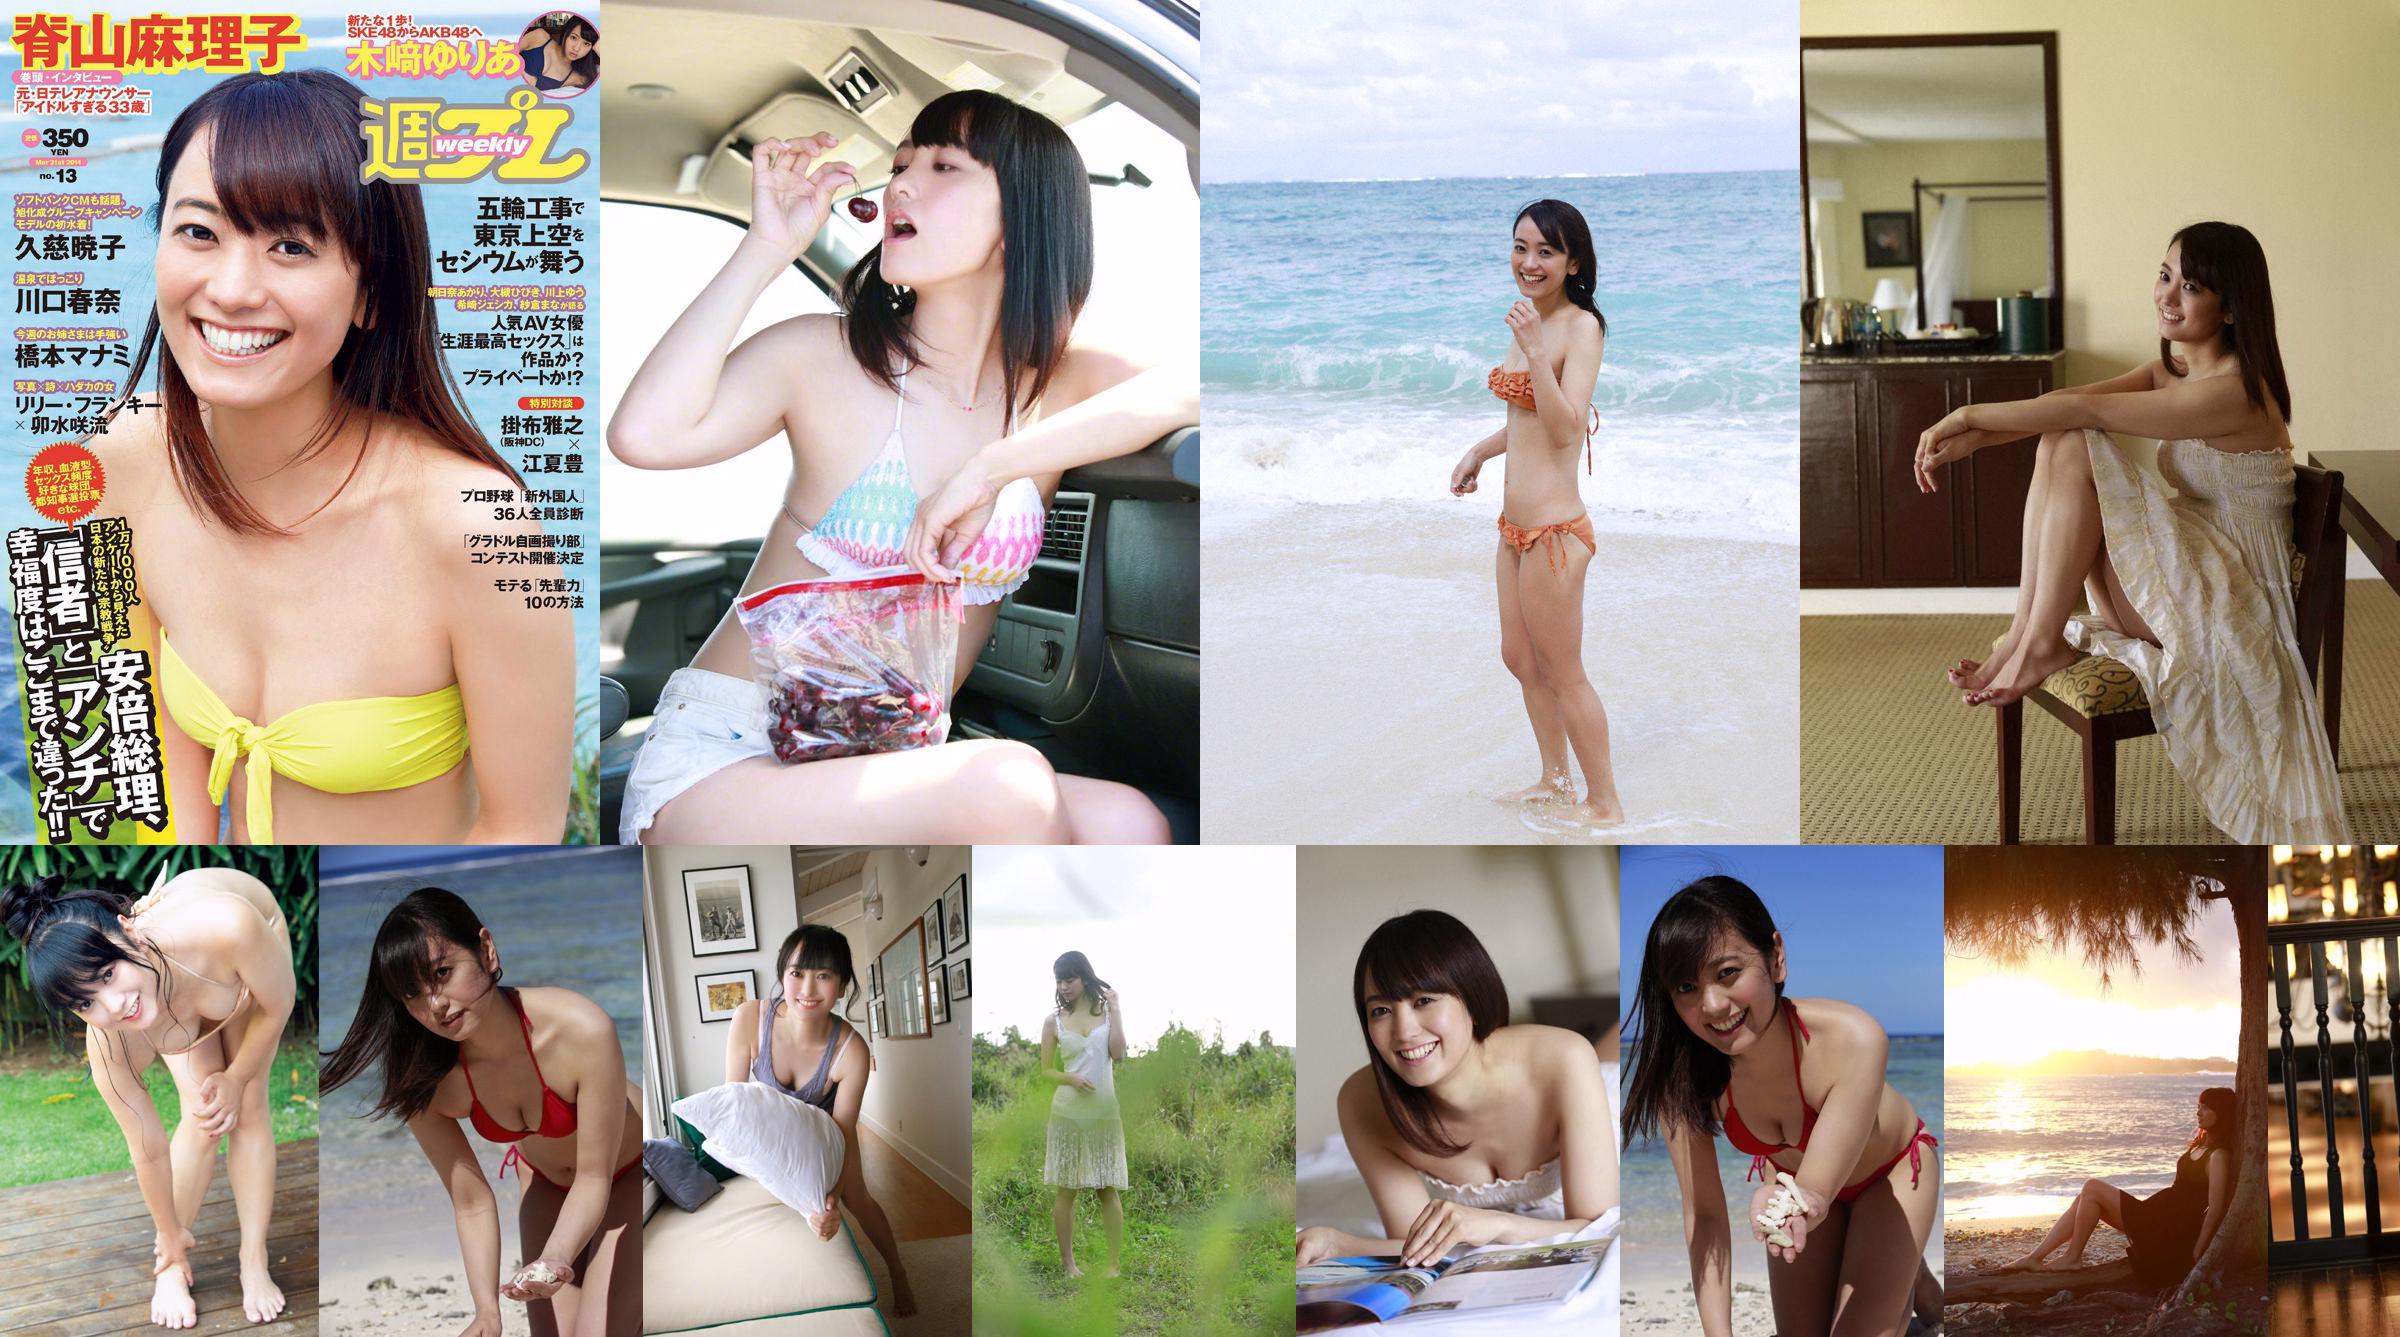 Sariyama Mariko "Aidaru 33 years old" [WPB-net] No.165 No.fb5653 Page 1